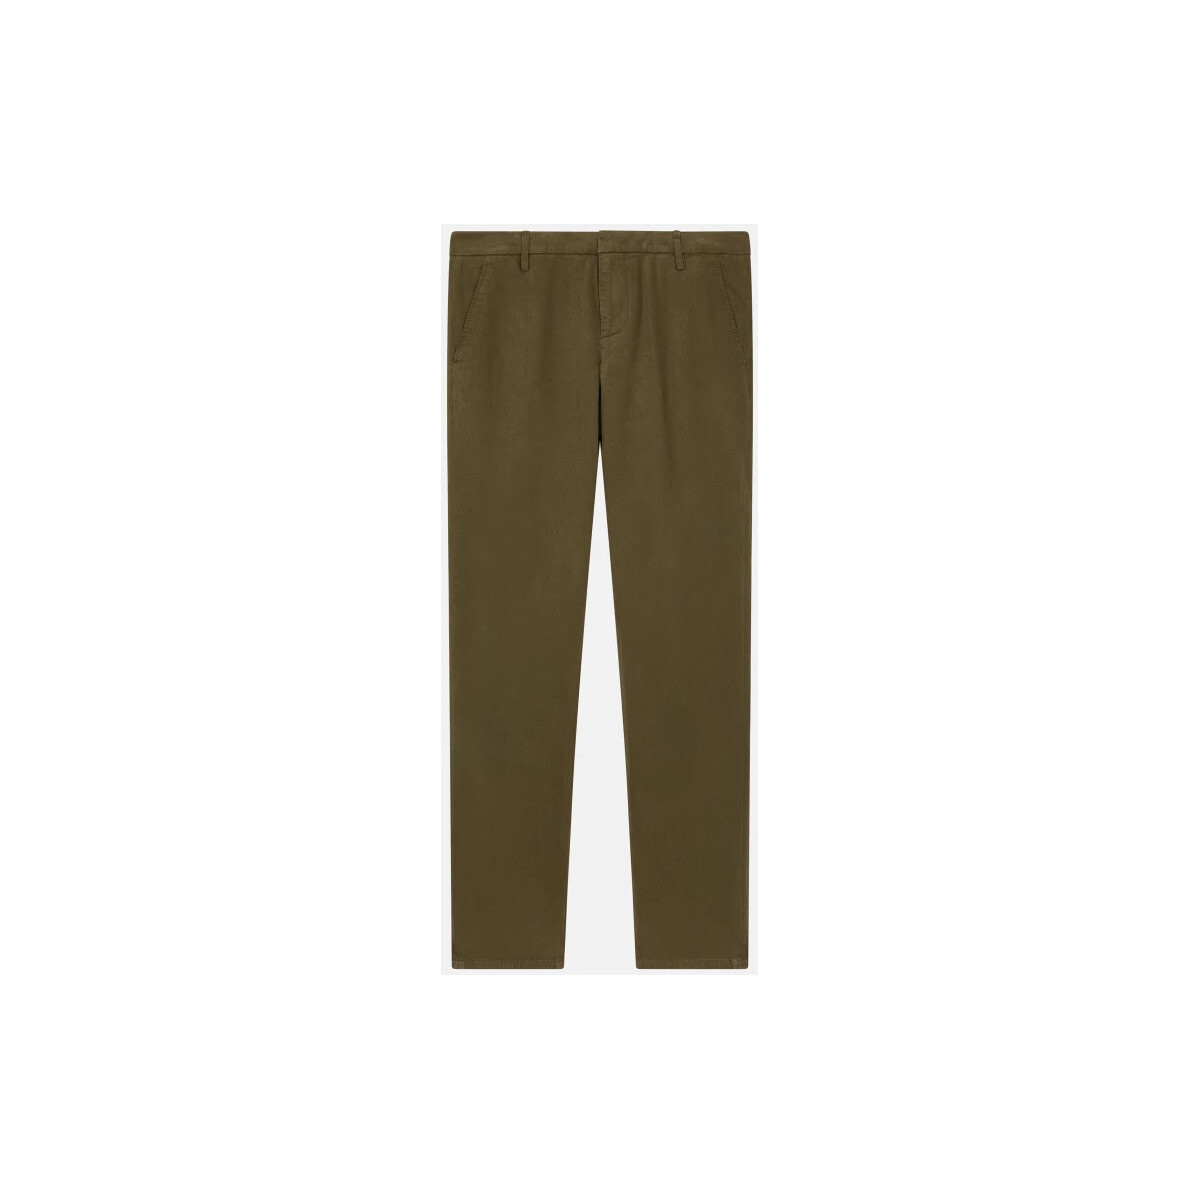 textil Hombre Pantalones Dondup UP235GSE043UPTD637 Verde